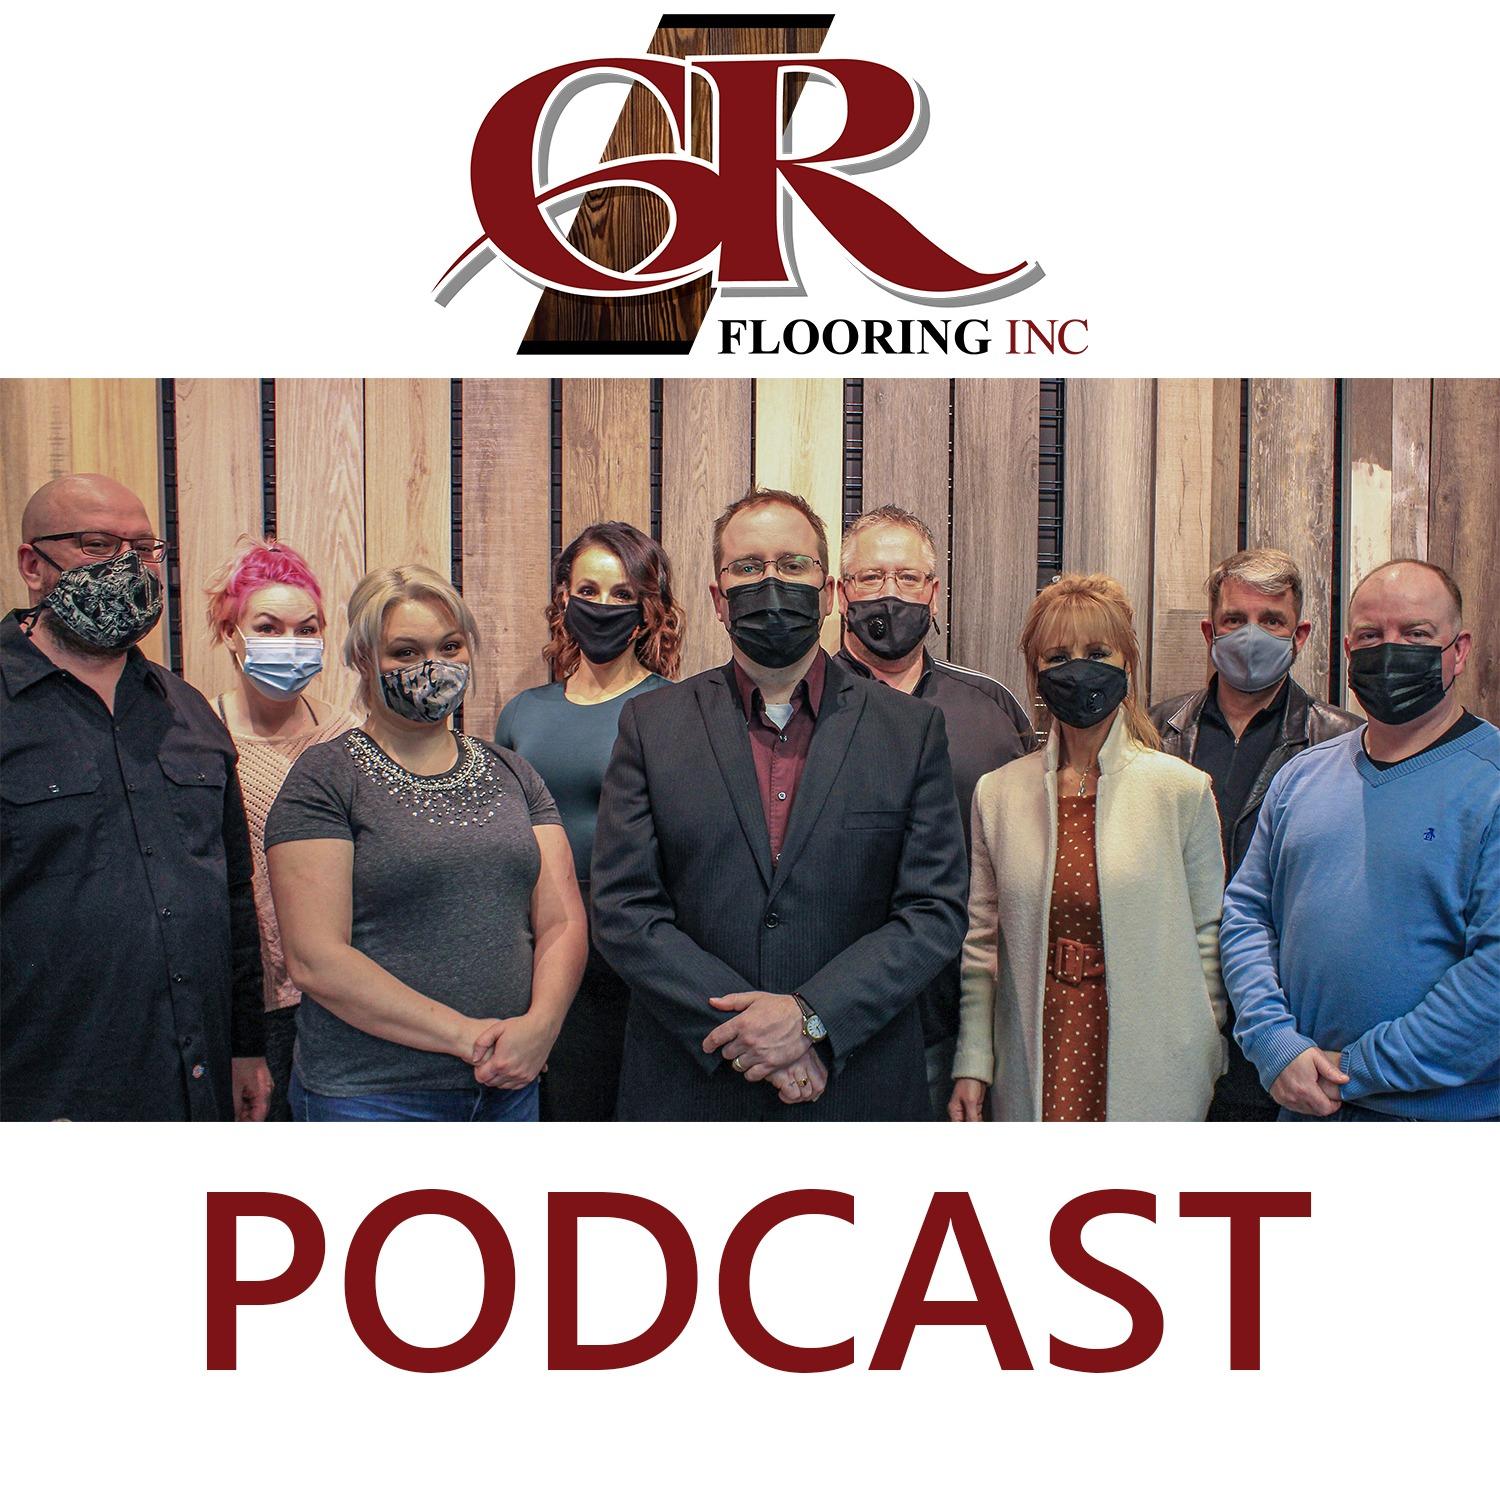 GR Flooring's Podcast